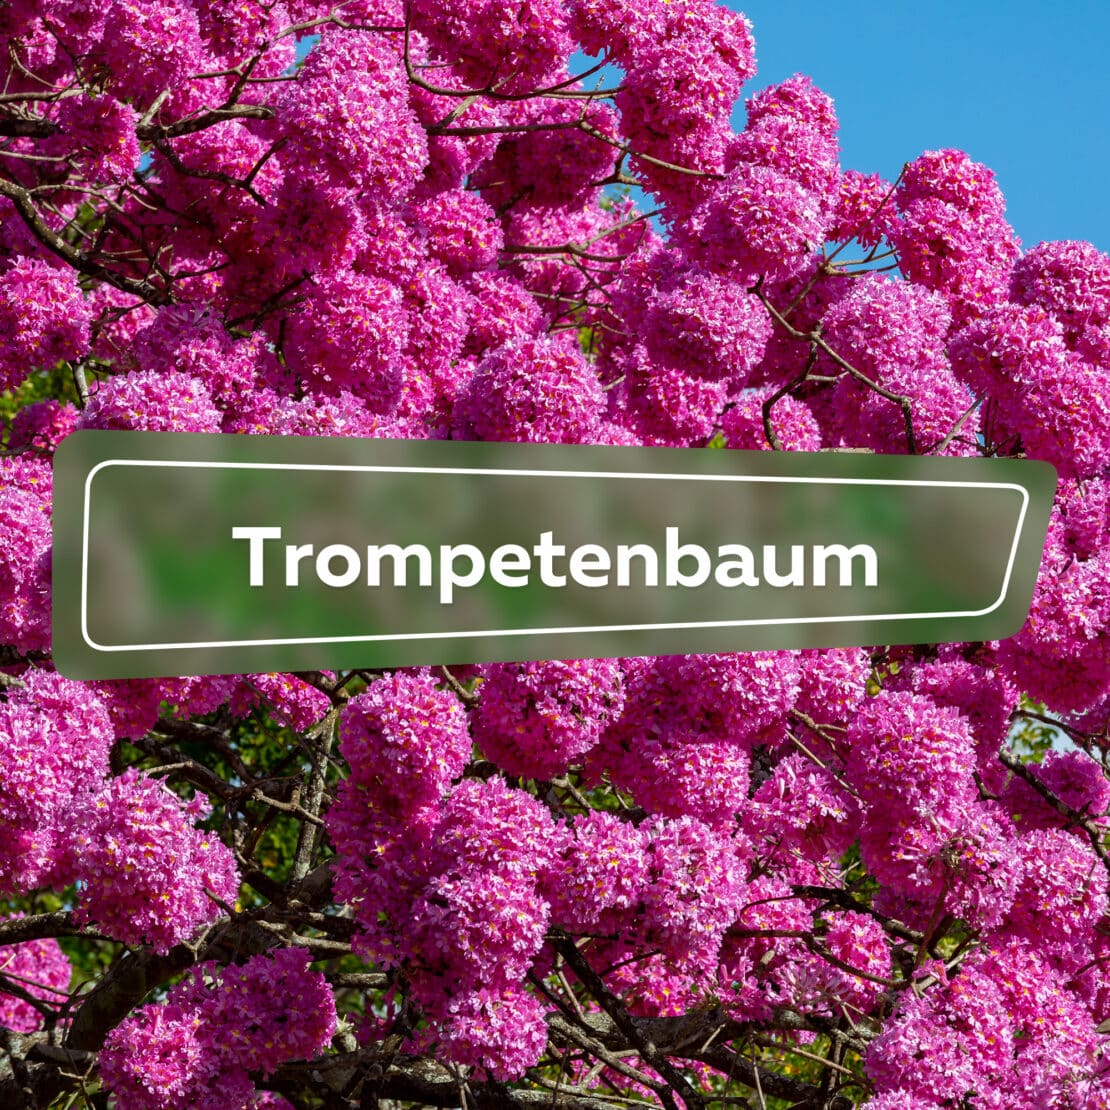 Trompetenbaum